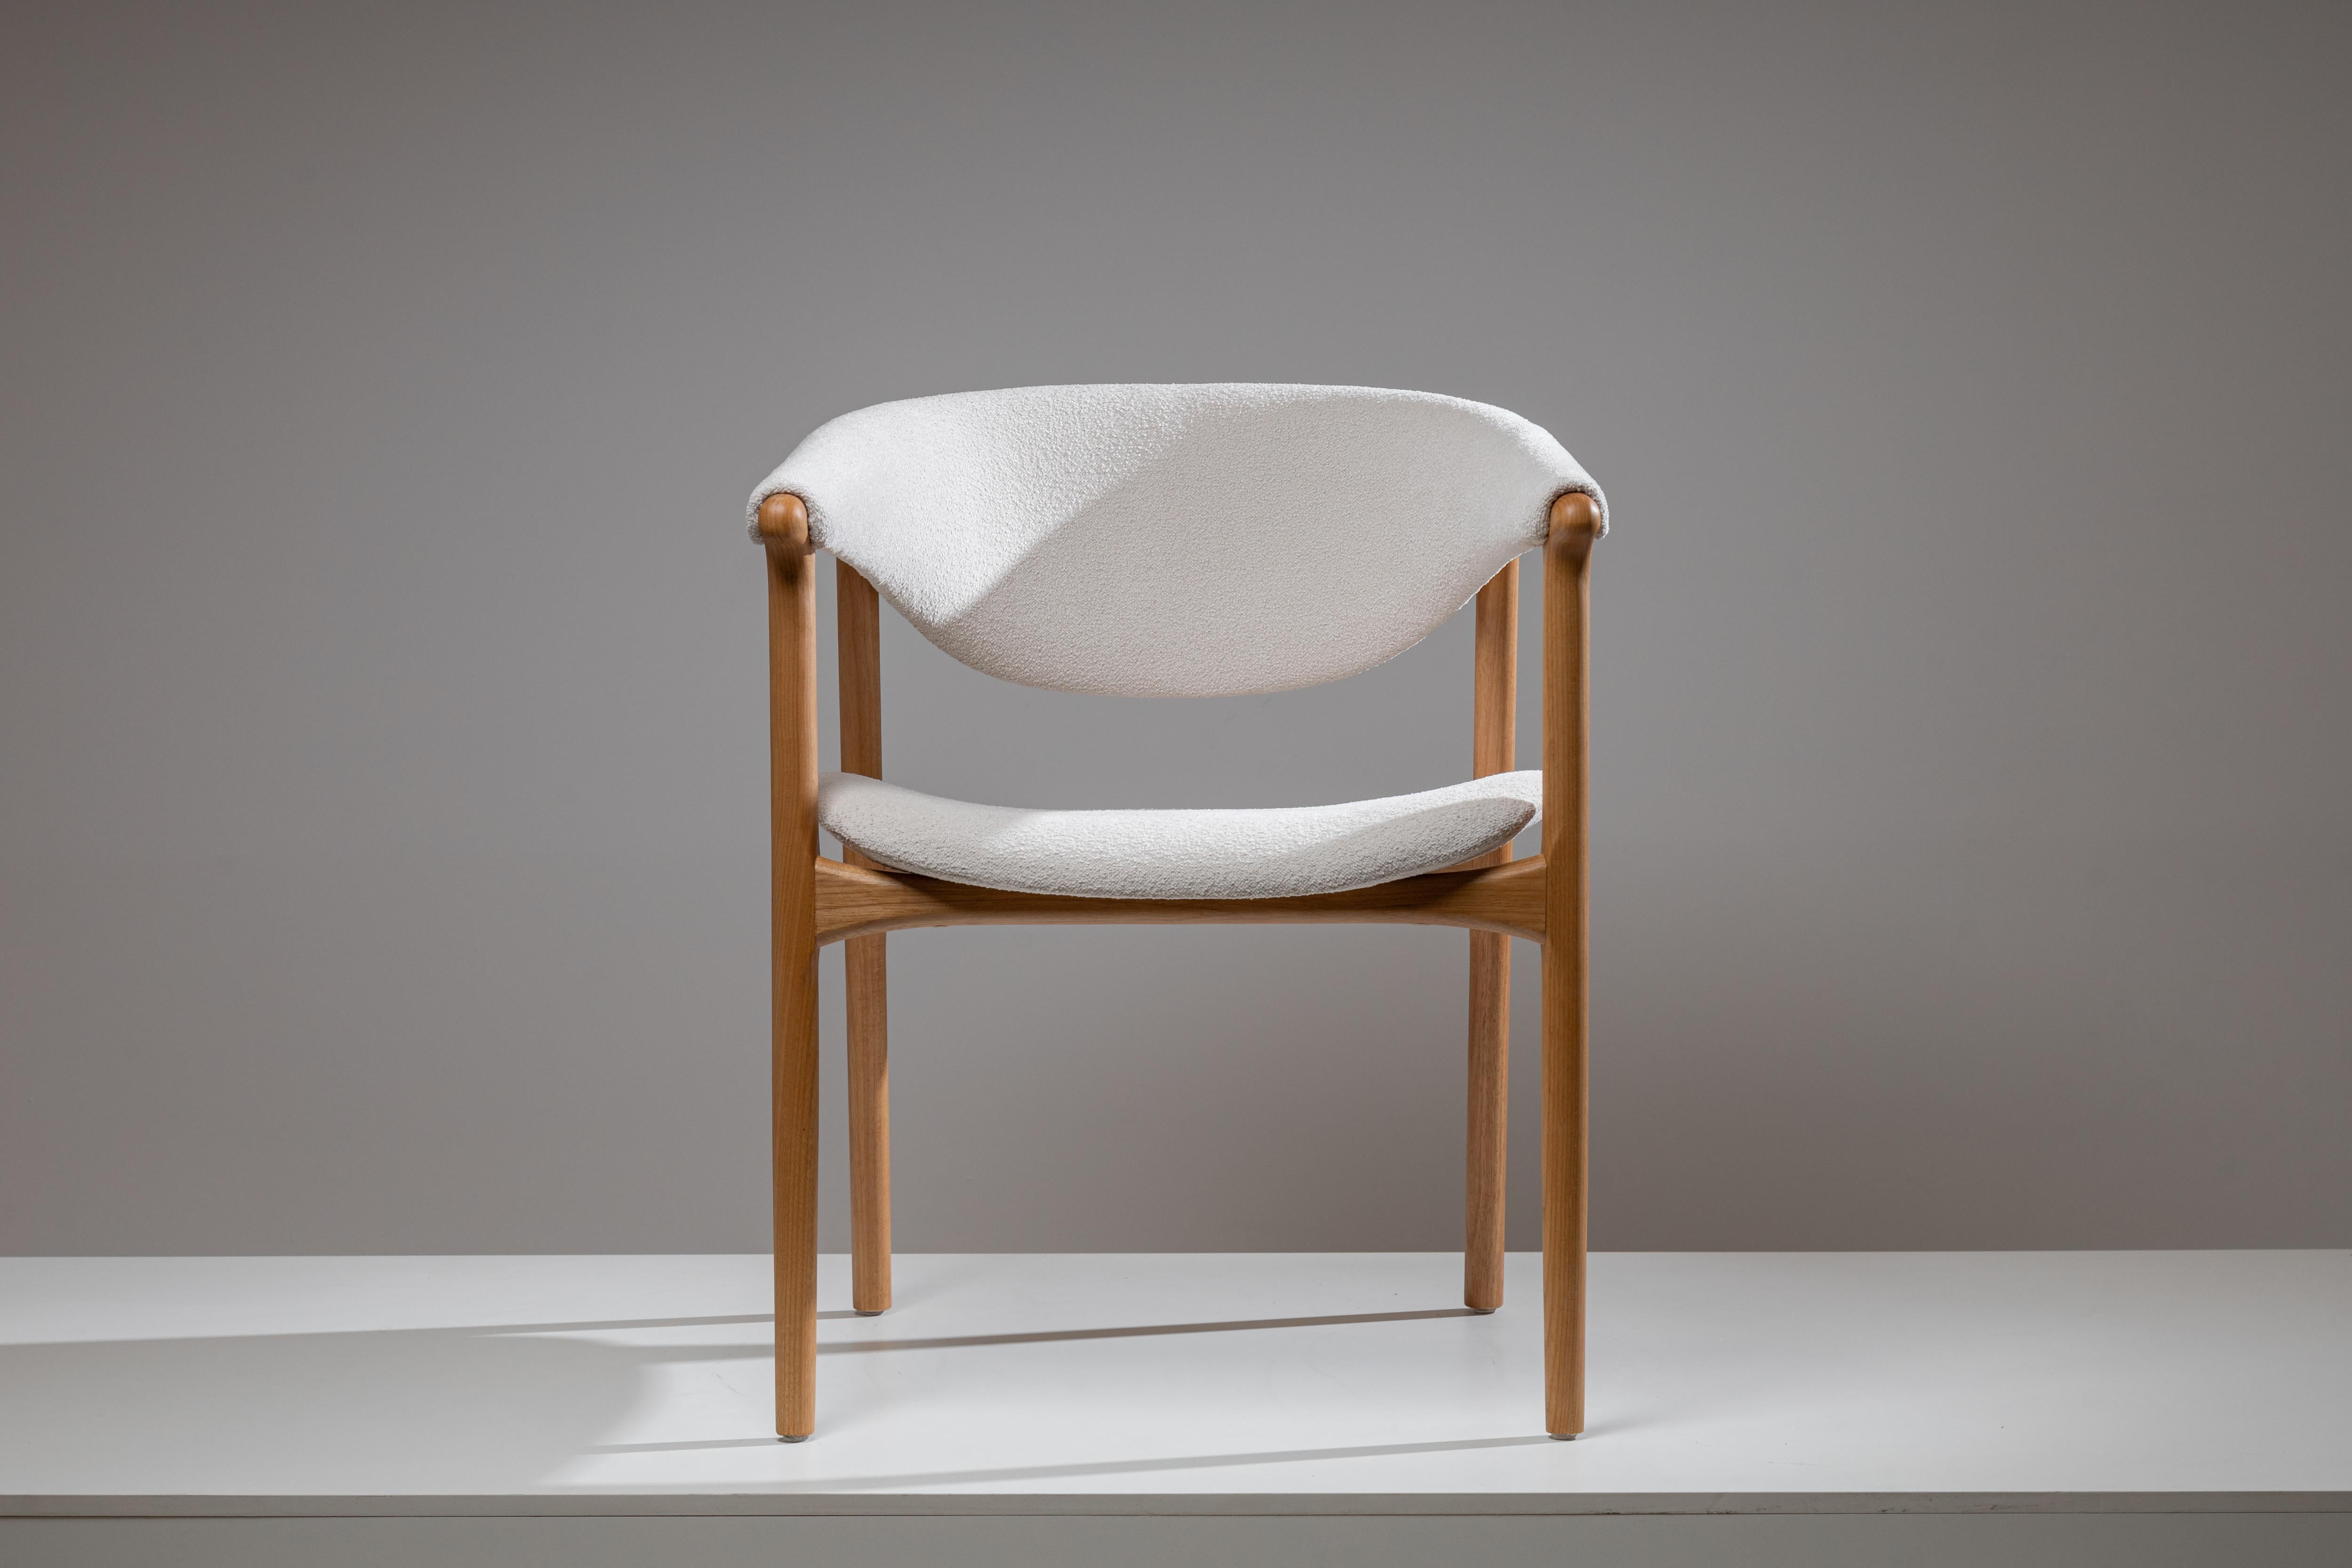 Le design du fauteuil Arraia associe une fois de plus les formes de la Nature aux traits des designers de Lattoog.
Ici, la vie marine, avec sa vaste 